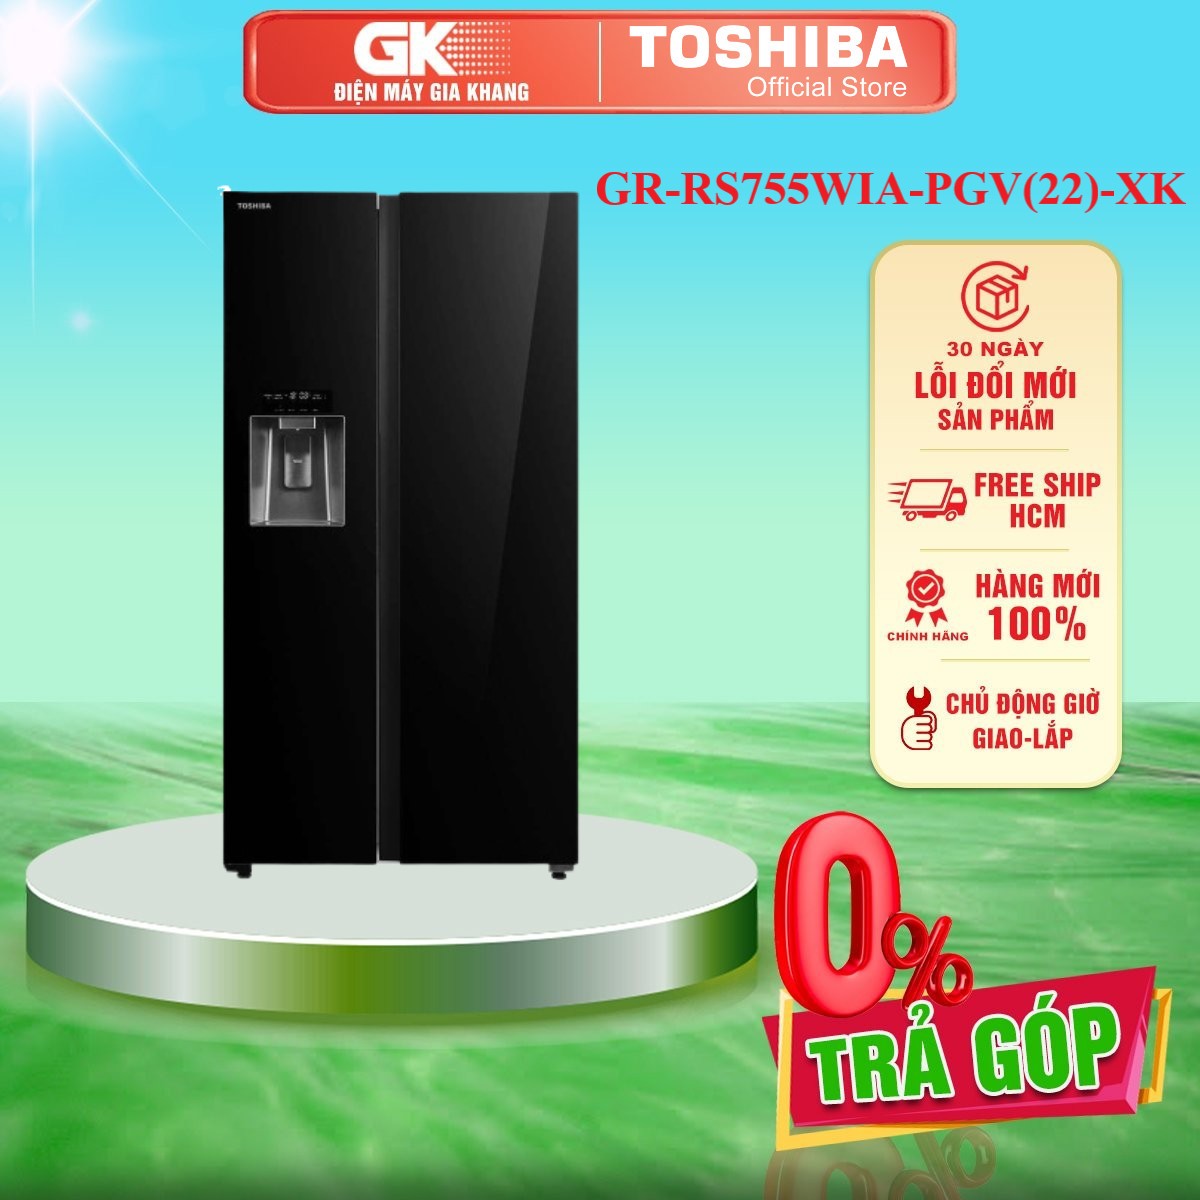 GR-RS755WIA-PGV(22)-XK - Tủ Lạnh Toshiba GR-RS755WIA-PGV(22)-XK  - Hàng Chính Hãng - Chỉ Giao Hồ Chí Minh